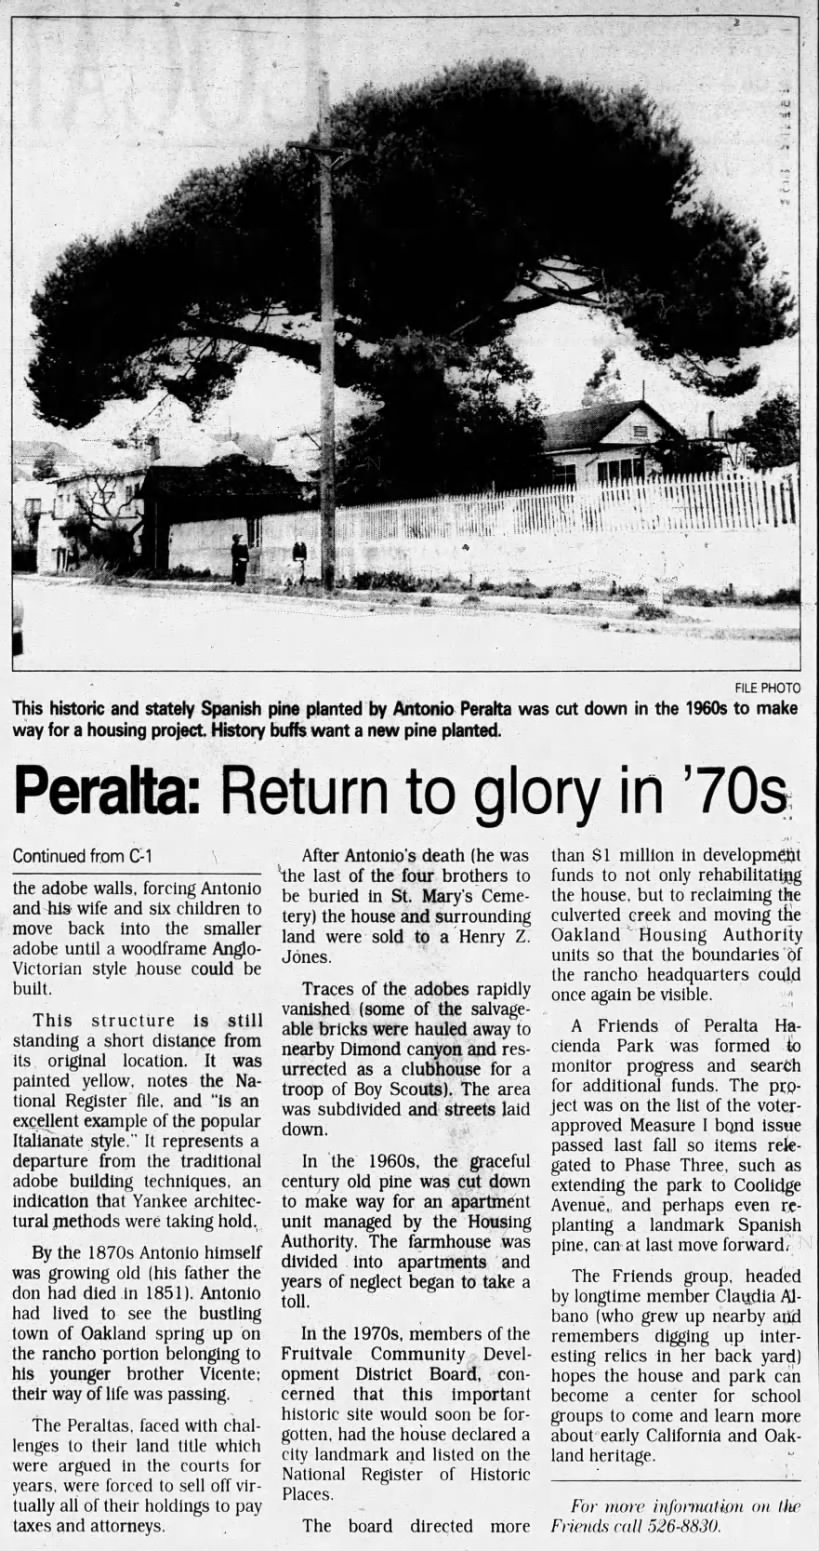 Annalee Allen
Peralta: Return to glory in '70s, part 2